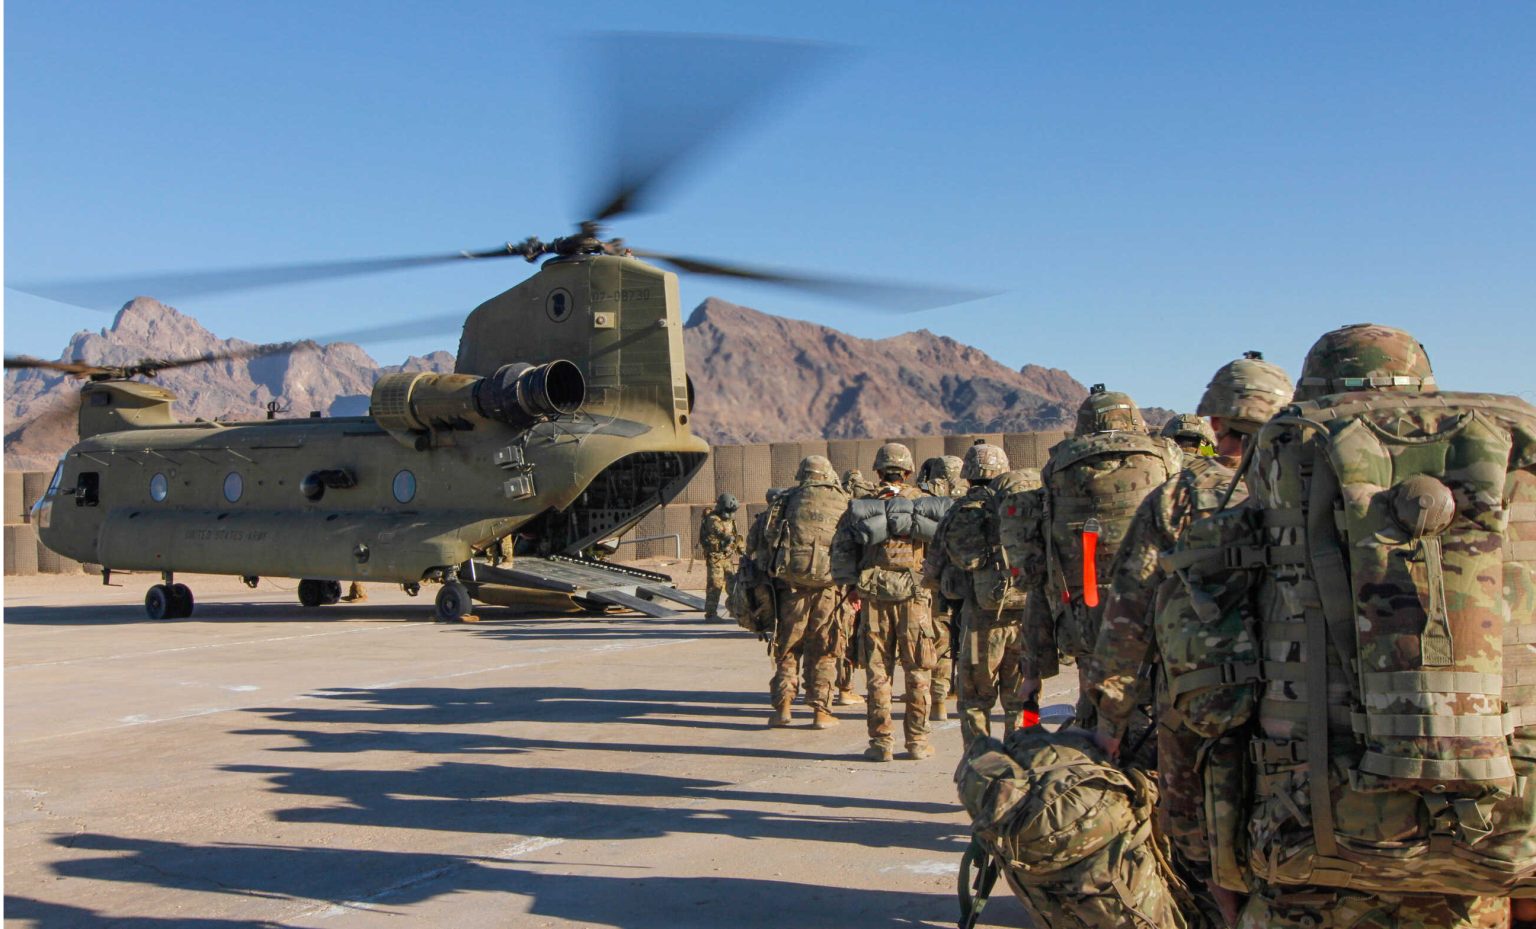 afganista আফগান যুদ্ধের চূড়ান্ত সমাপ্তি, কাবুল ছাড়ল মার্কিন বাহিনী